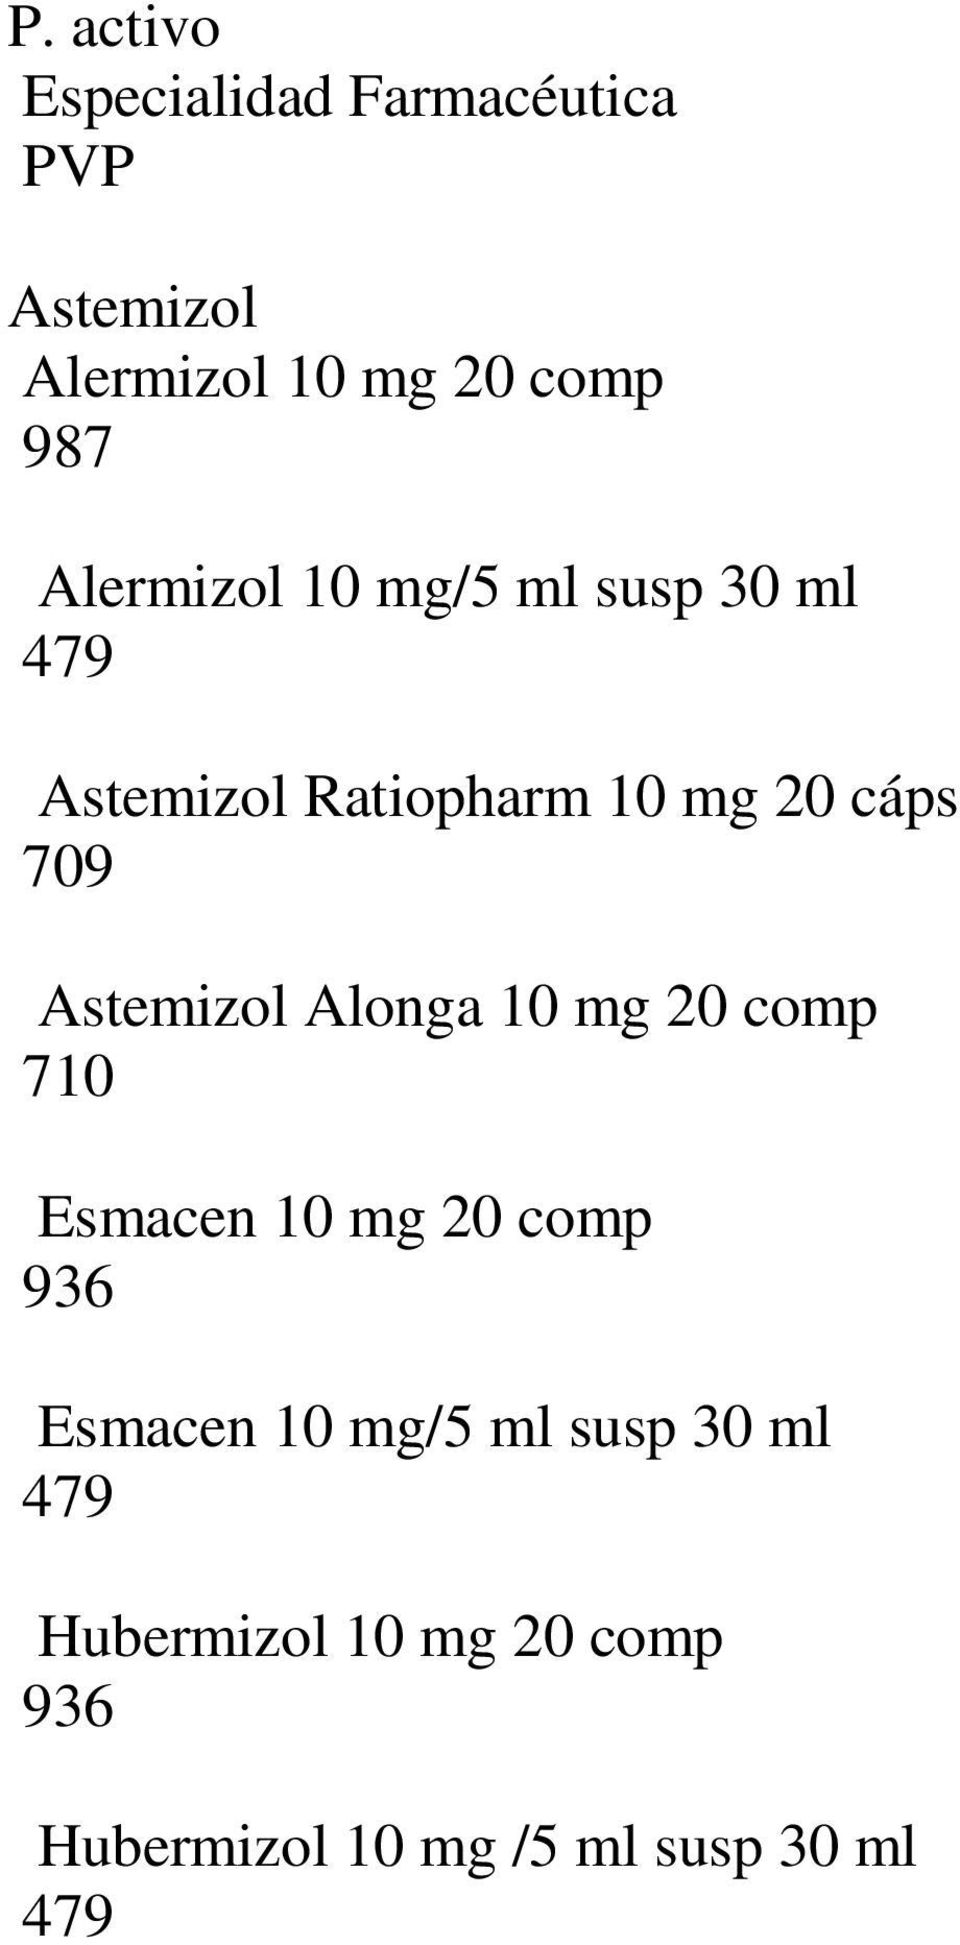 Astemizol Alonga 10 mg 20 comp 710 Esmacen 10 mg 20 comp 936 Esmacen 10 mg/5